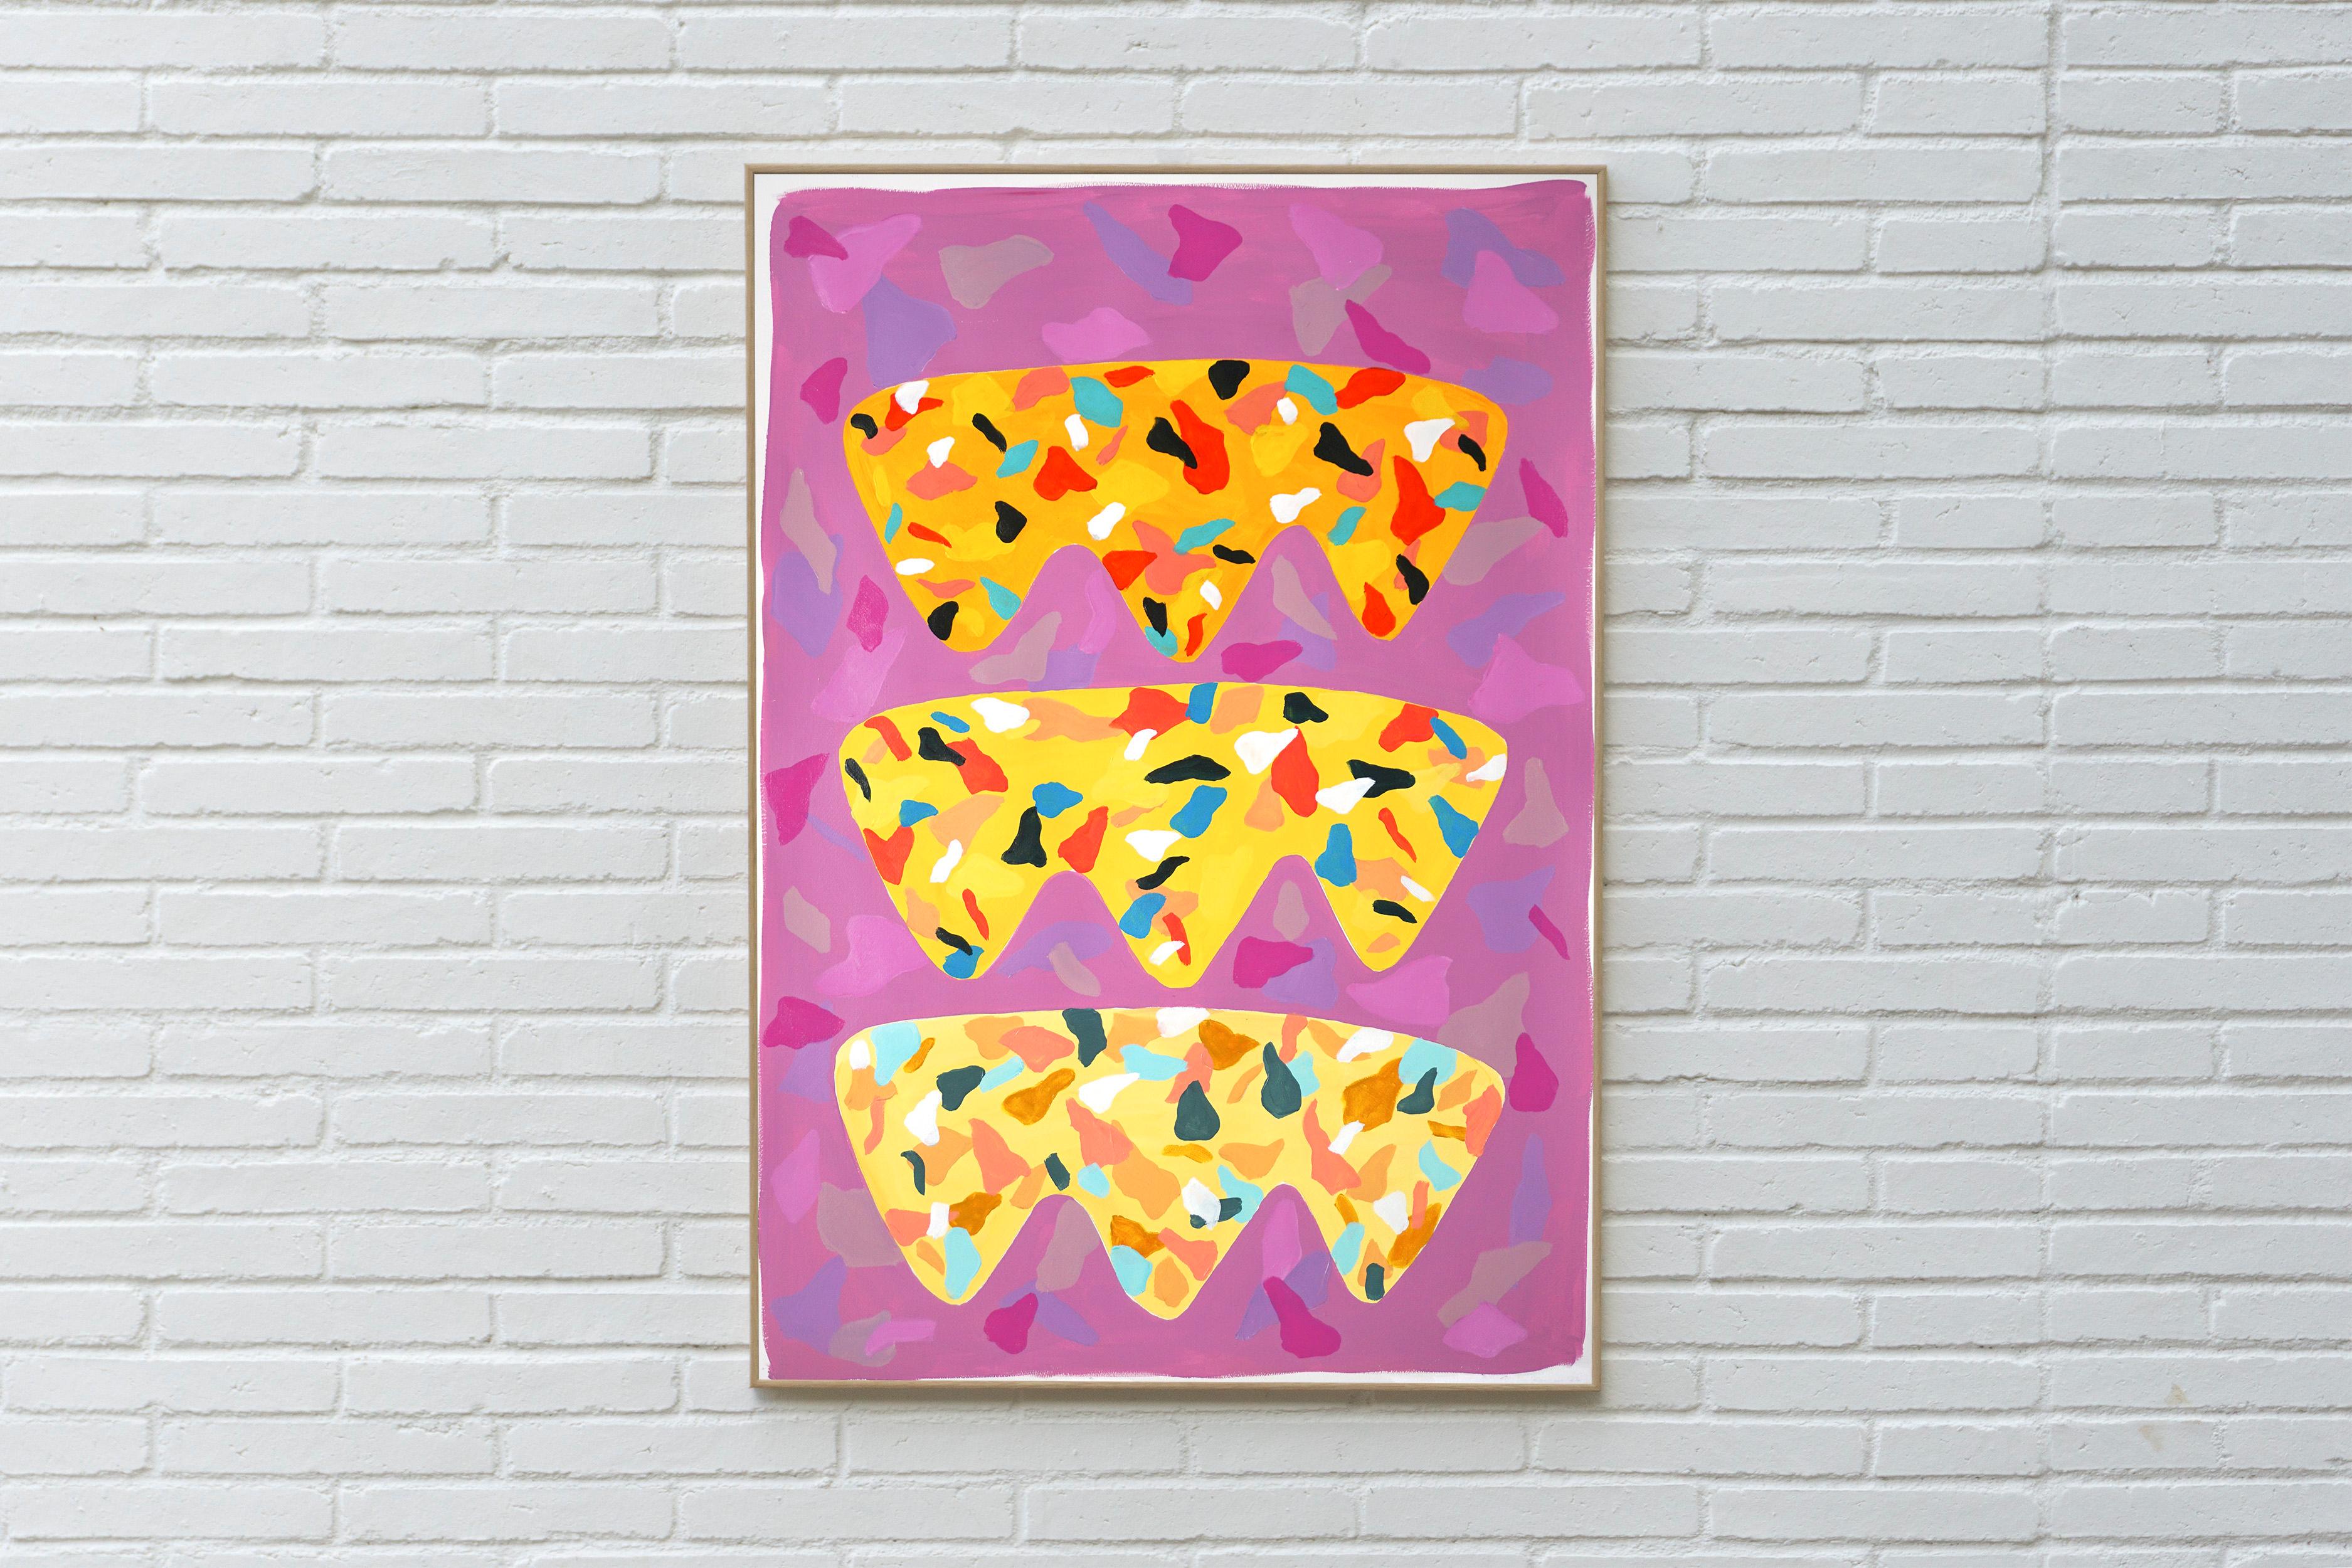 Cette série de peintures acryliques réalisées à la main par Natalia Roman s'inspire des couleurs et des textures du carrelage italien en terrazzo. Les motifs créés combinent une variété de couleurs vives au premier plan avec des tons subtils en